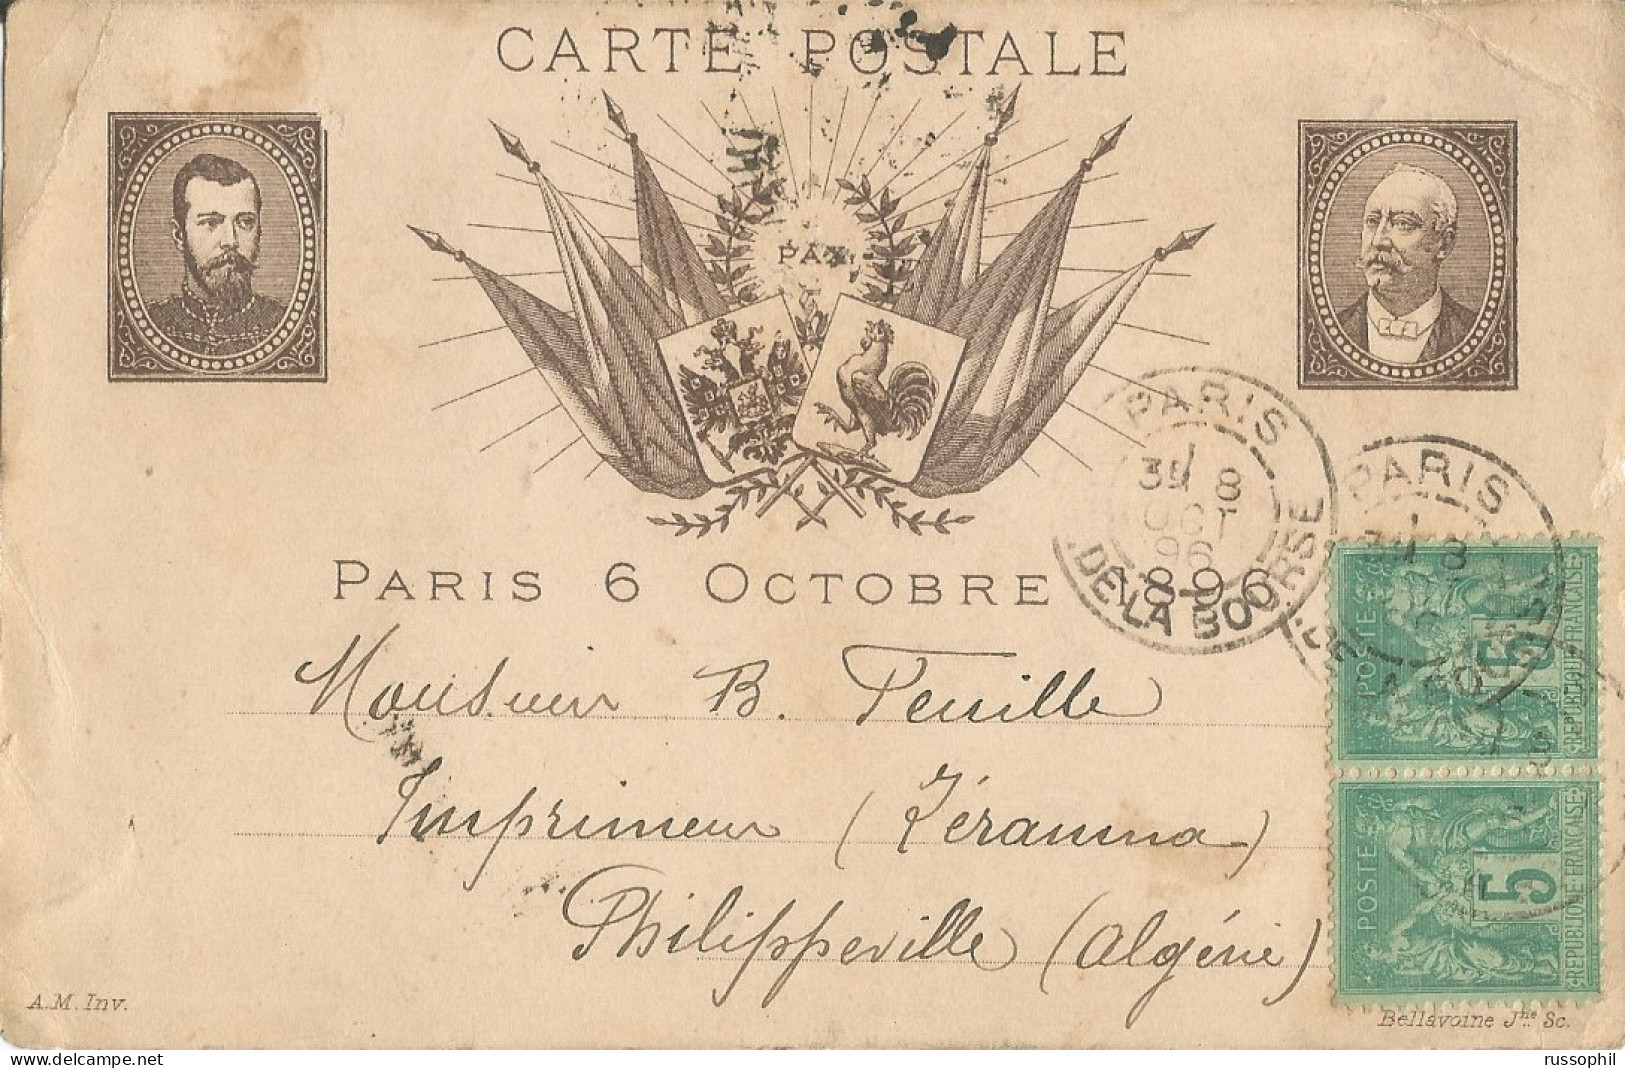 FRANCO RUSSIAN ALLIANCE - PARIS 6 OCTOBRE 1896 - ED BELLAVOINE - 1896 - Ereignisse